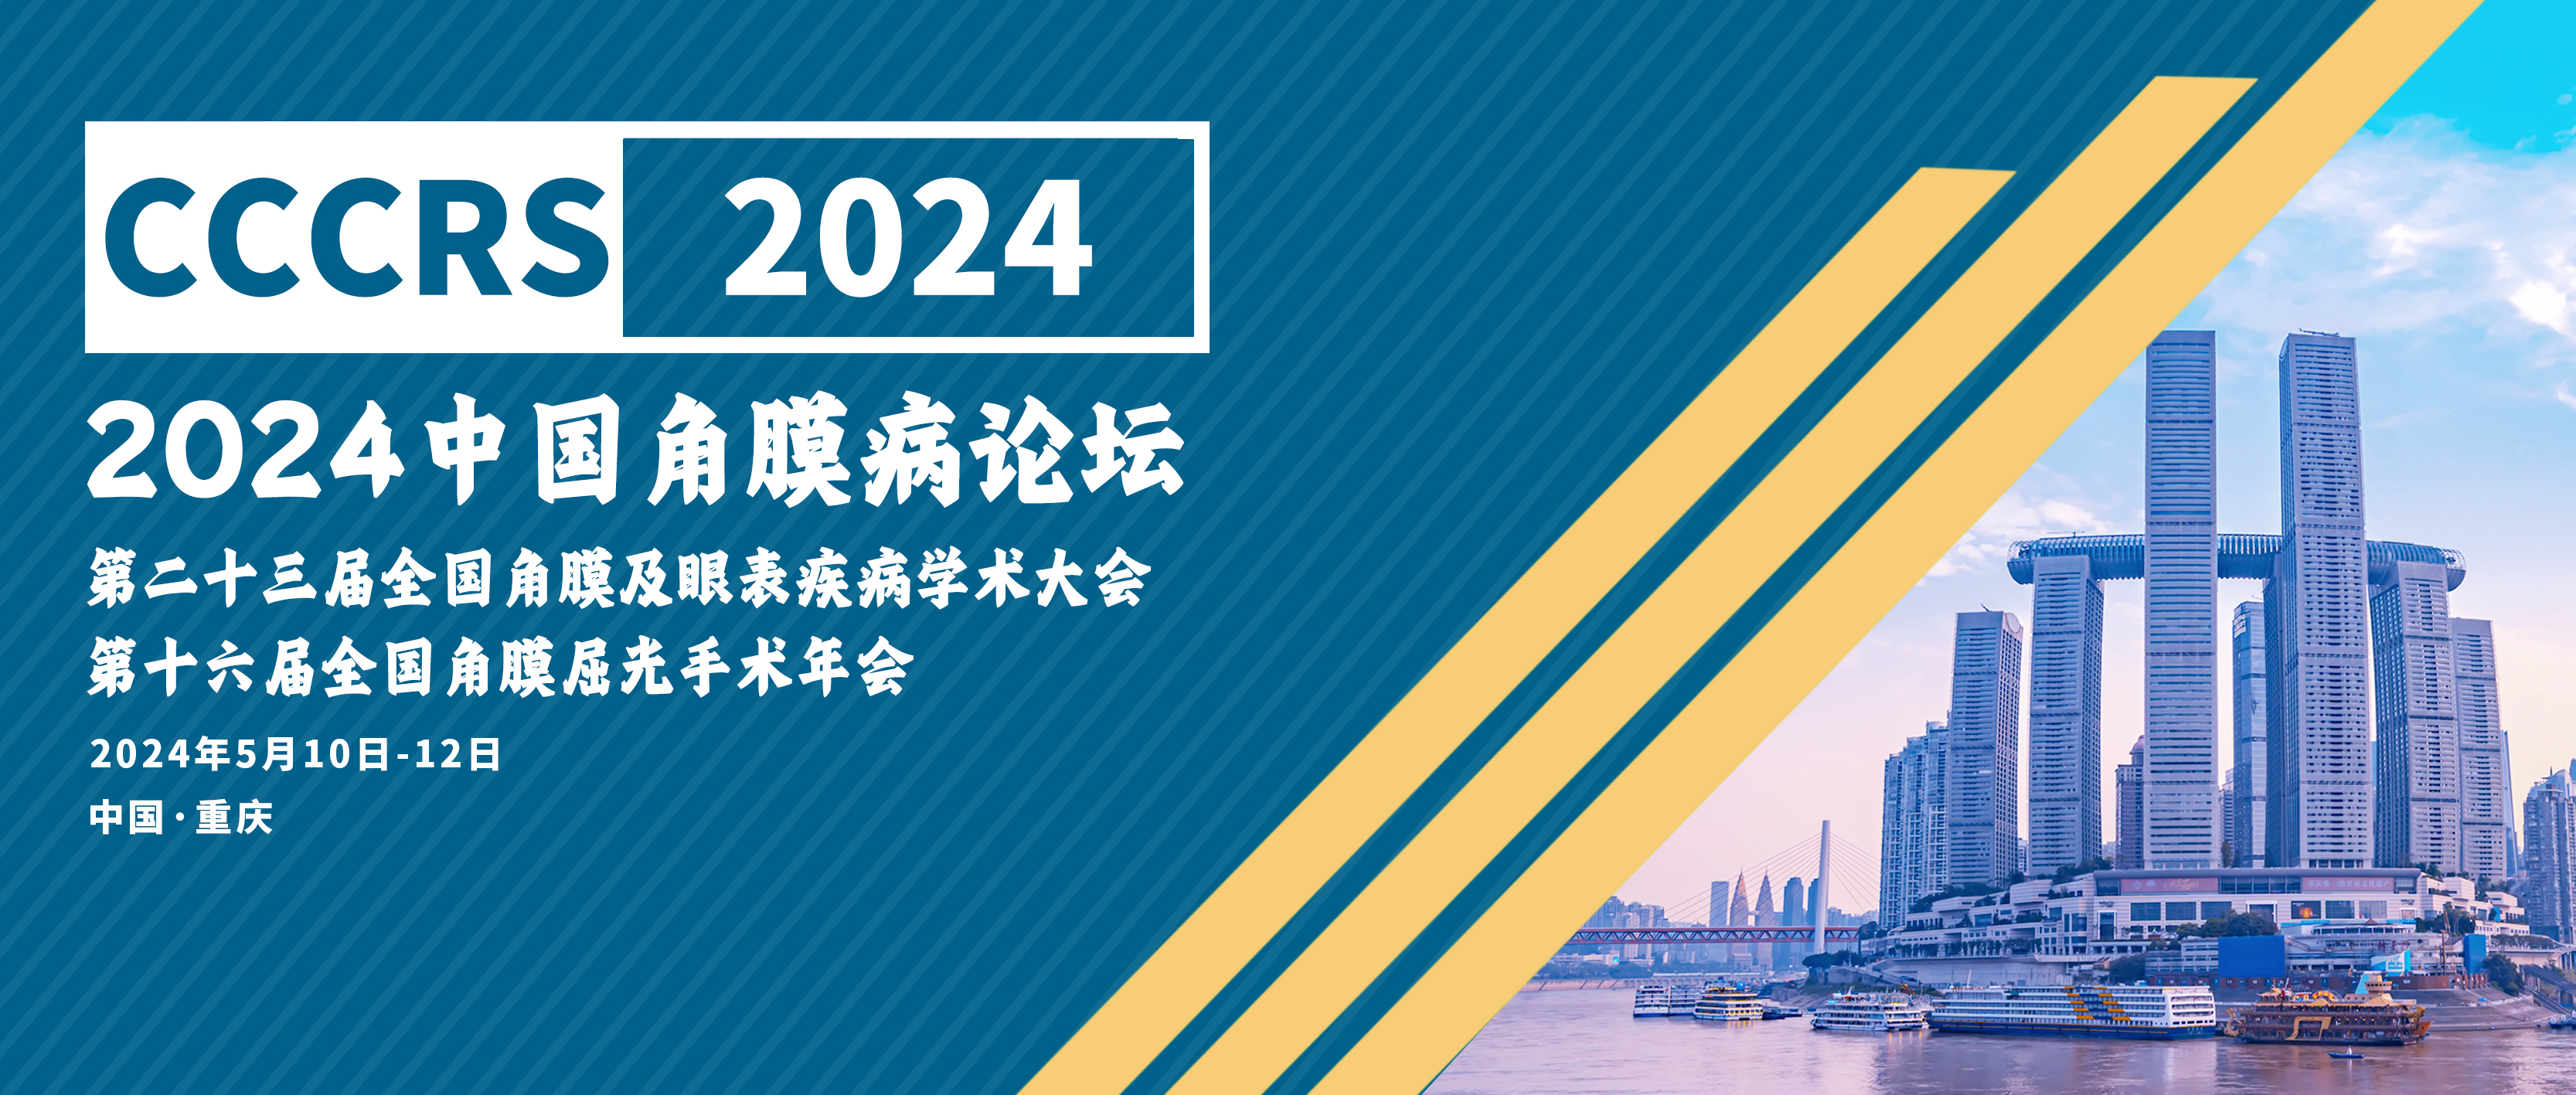 2024中国角膜病论坛&第二十三届全国角膜及眼表疾病学术大会暨第十六届全国角膜屈光手术年会